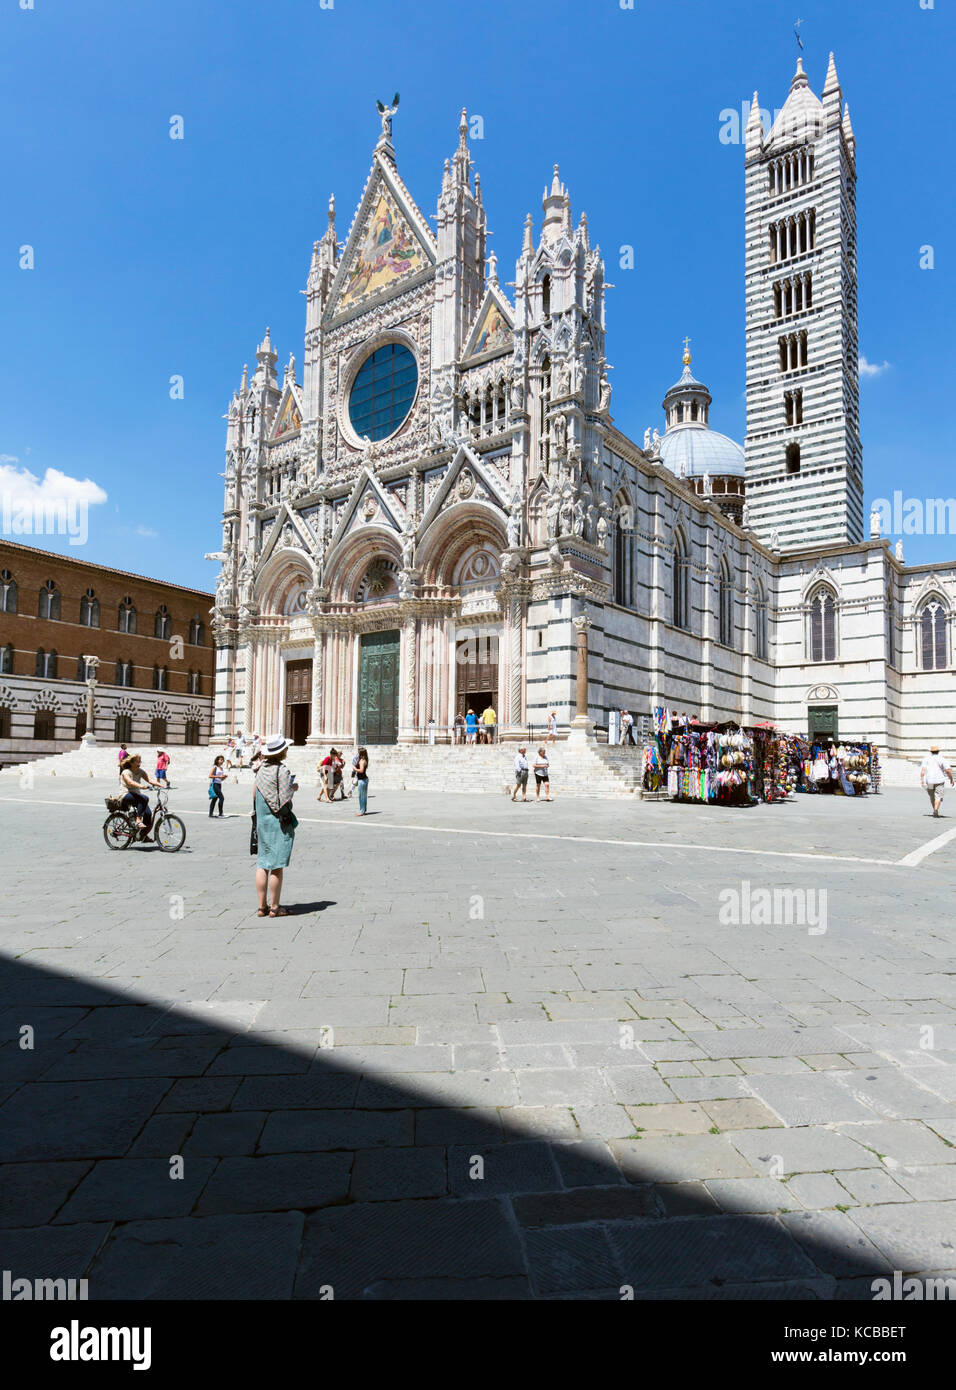 Siena, in provincia di Siena, Toscana, Italia. Il Duomo o Cattedrale. Il centro storico di Siena è un sito patrimonio mondiale dell'UNESCO. Foto Stock